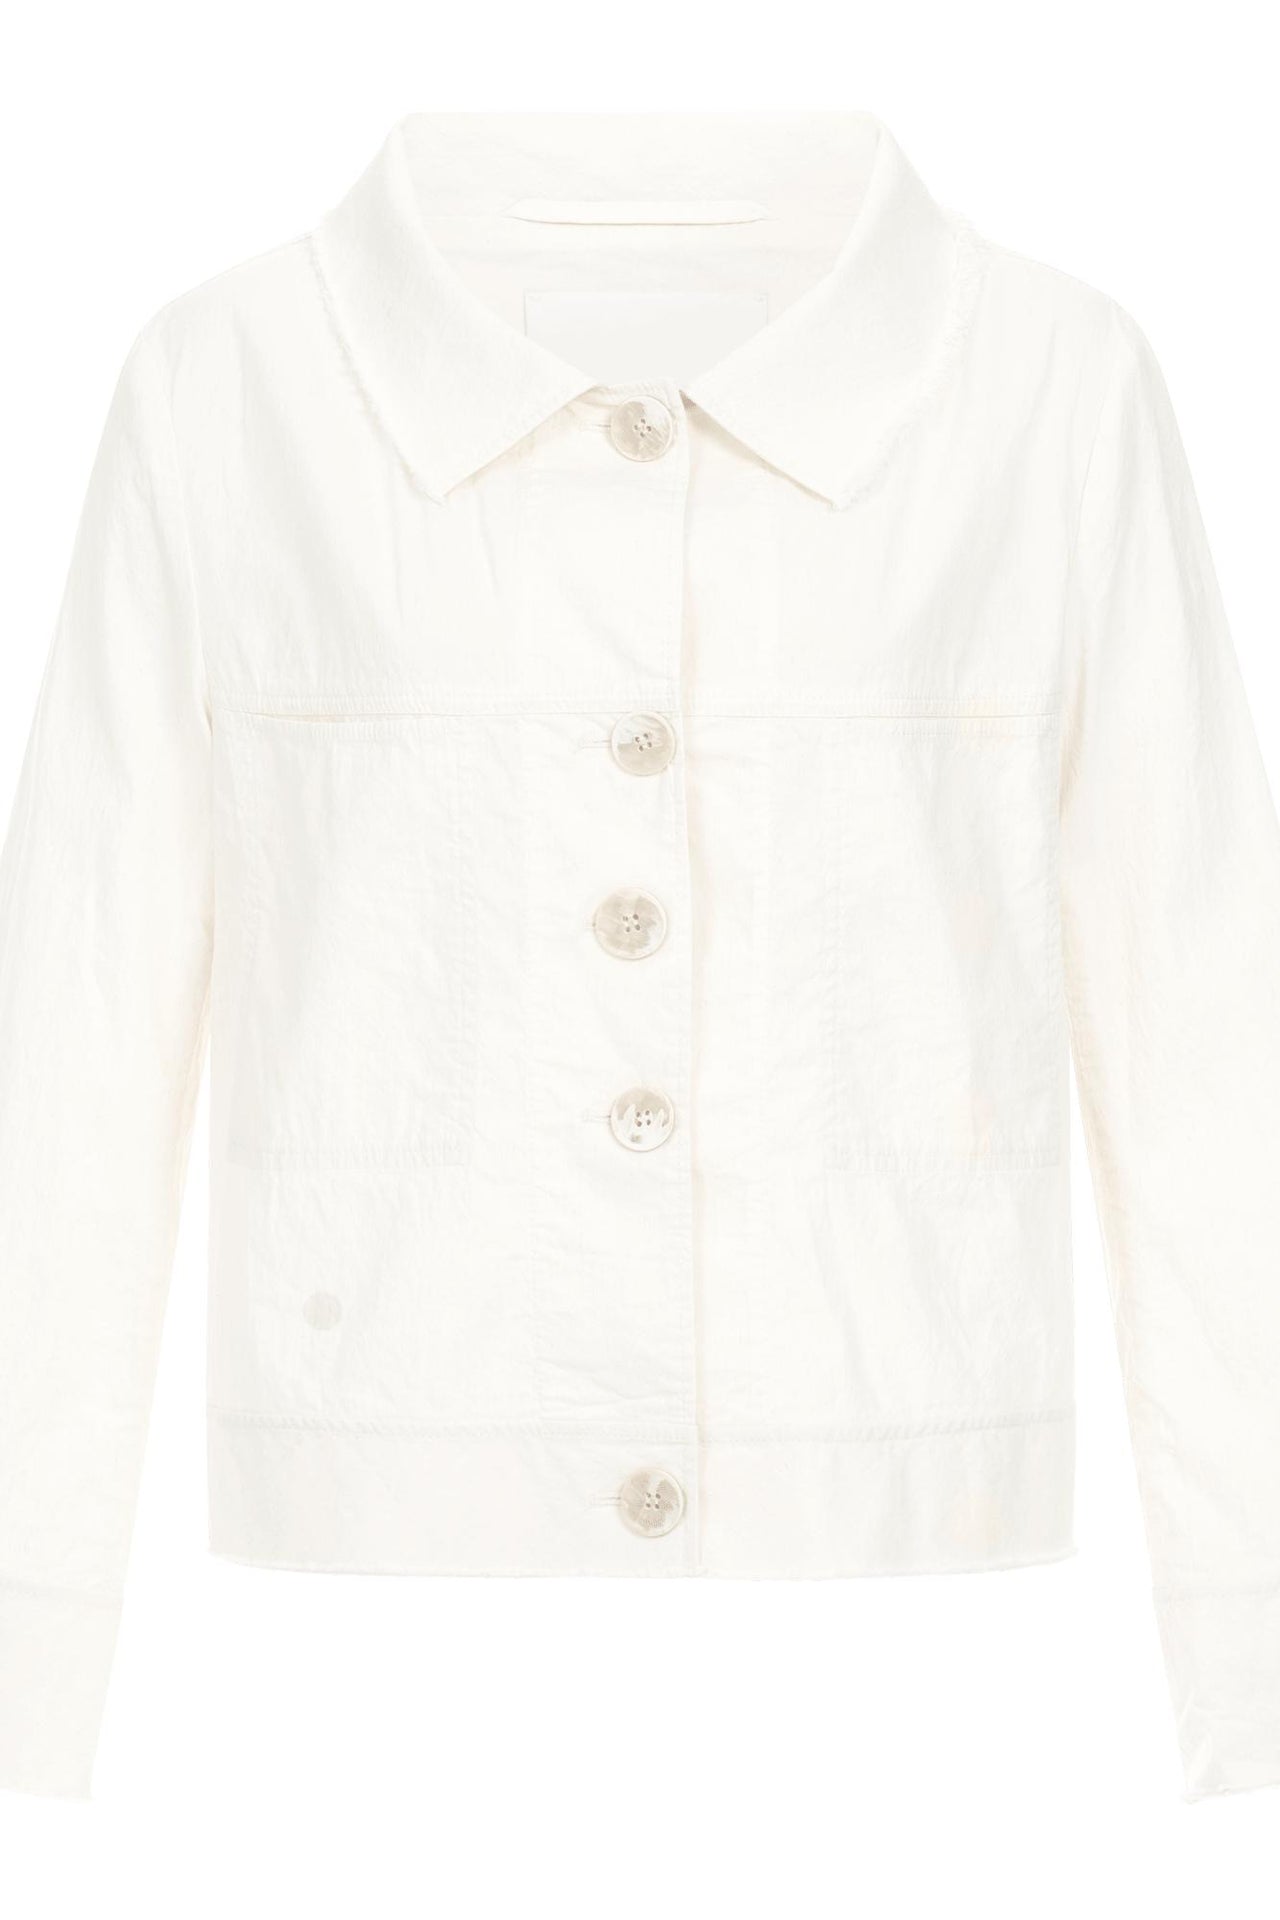 Beja Jacket in Off White-Jacket-Annette Gortz-Debs Boutique